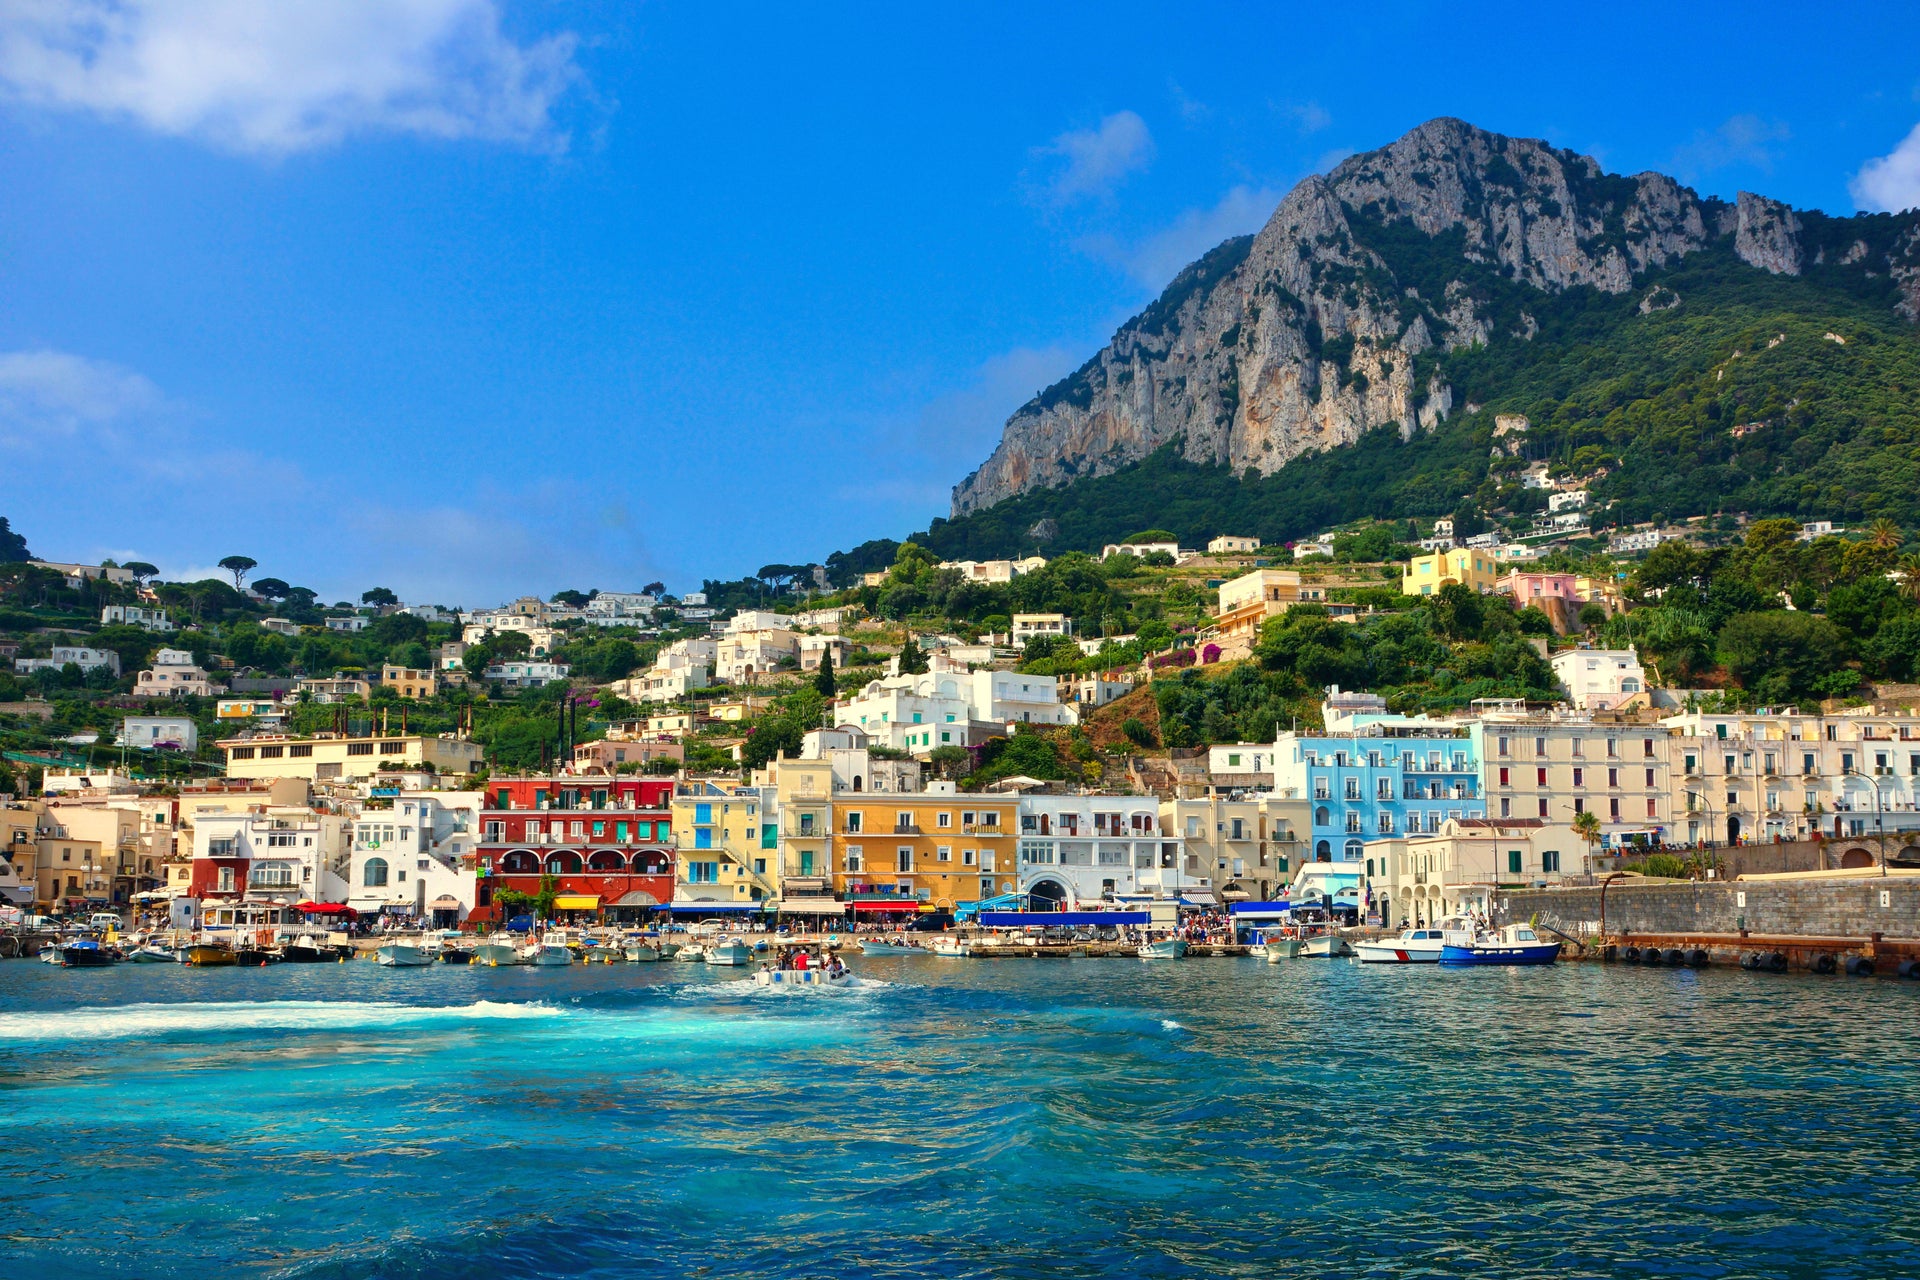 Excursión a la isla de Capri